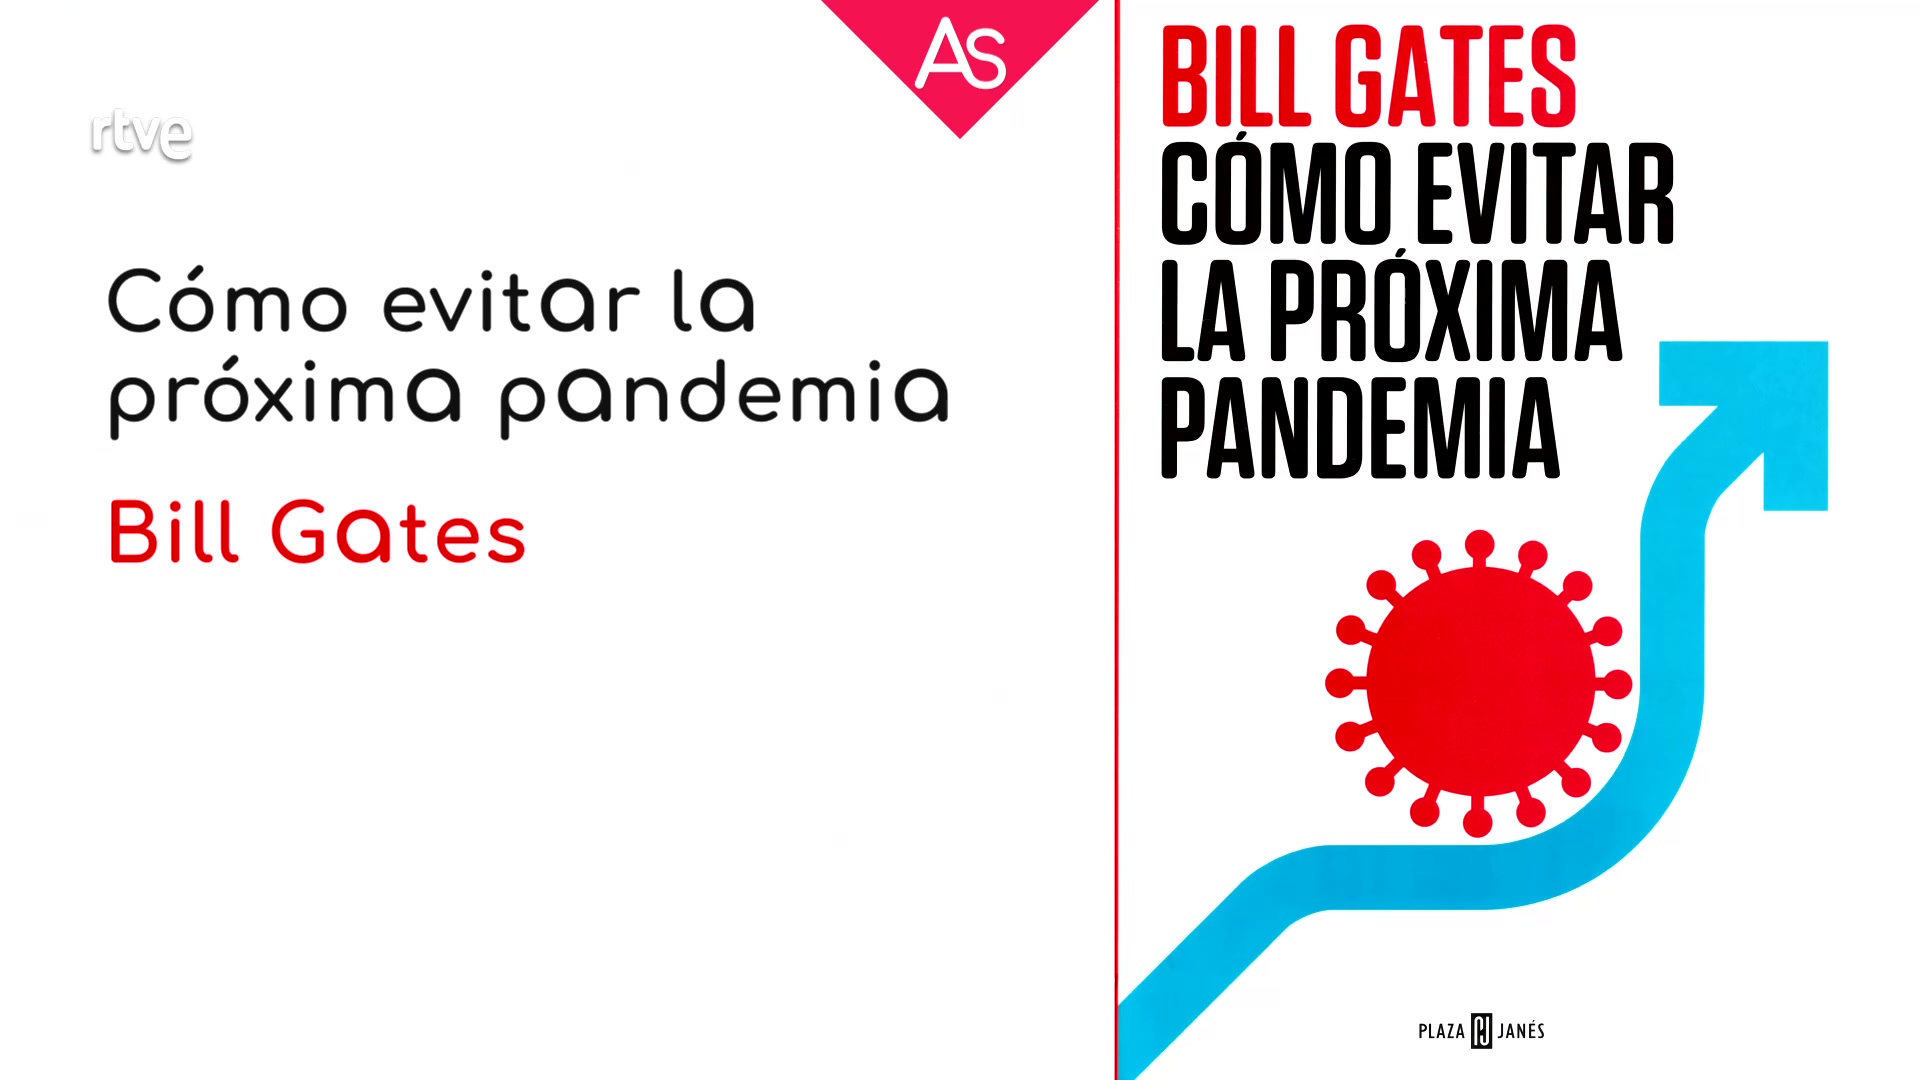 Ir al Video La aventura del saber - Reseñamos 'Cómo evitar la próxima pandemia' de Bill Gates